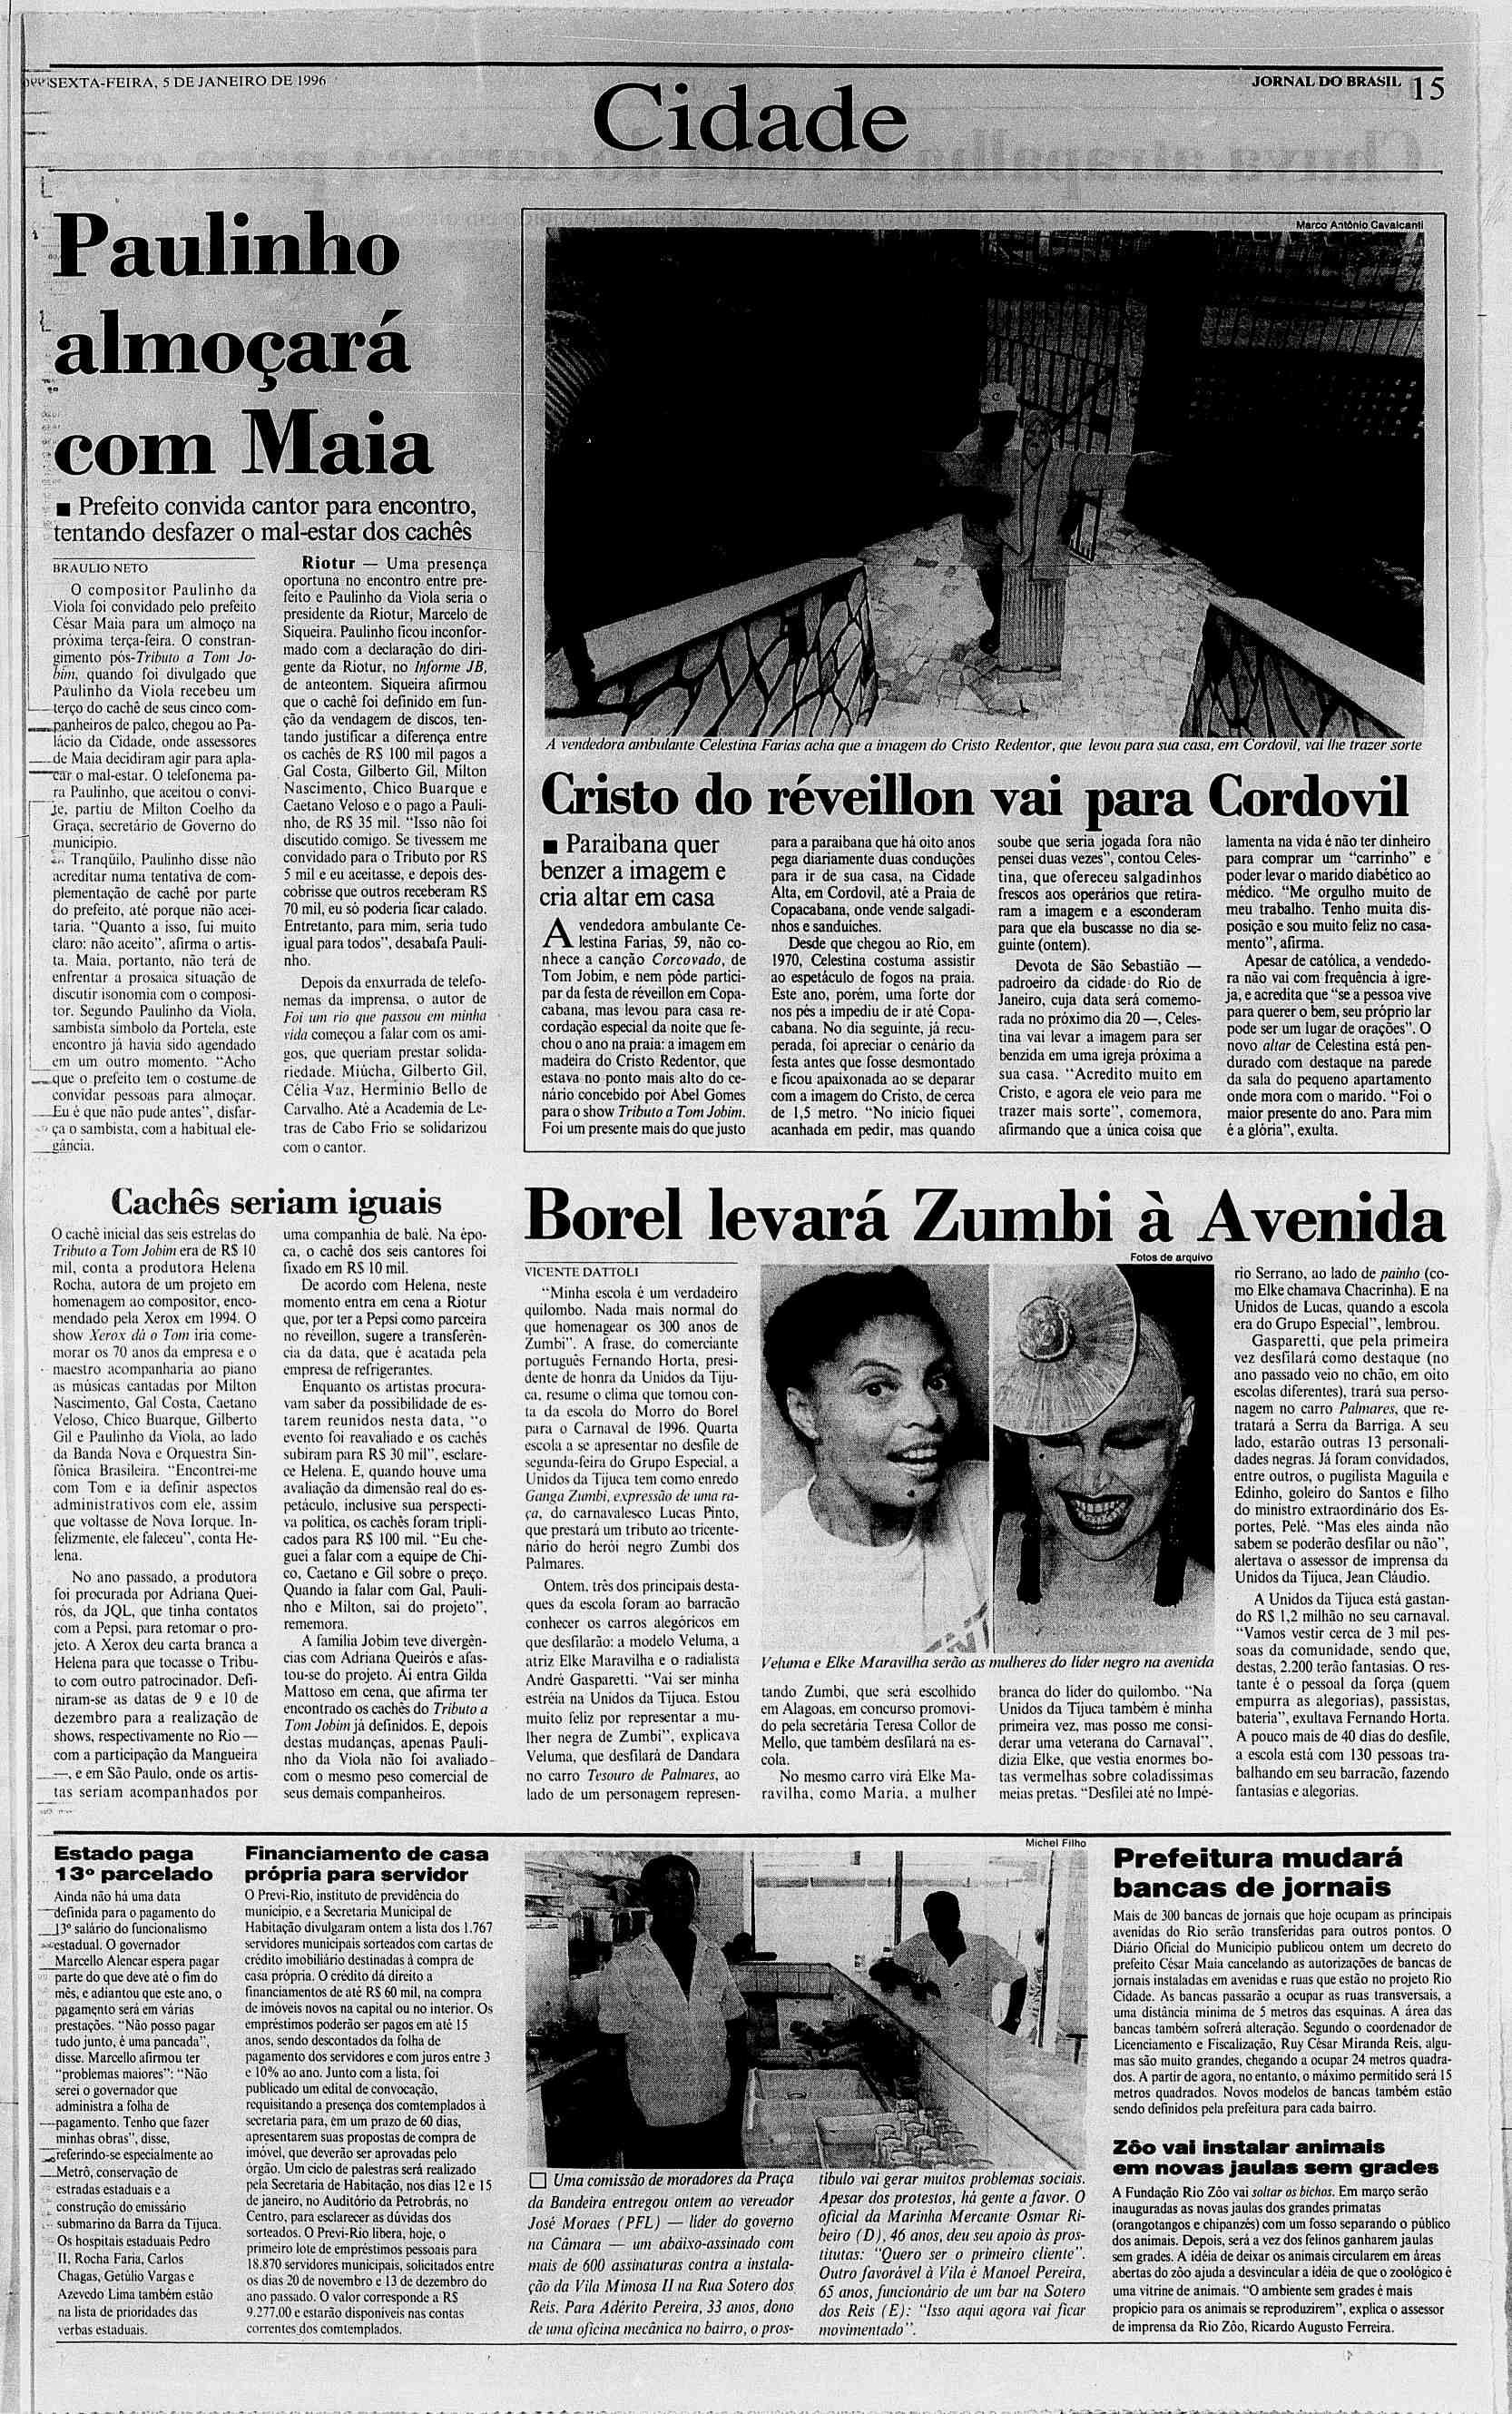 1W1SEXTA-FERA, WiSEXTA-FERA, 5 DE JANERO DE 1996 JORNAL DO BRASL BRASH. Cidade : L,.